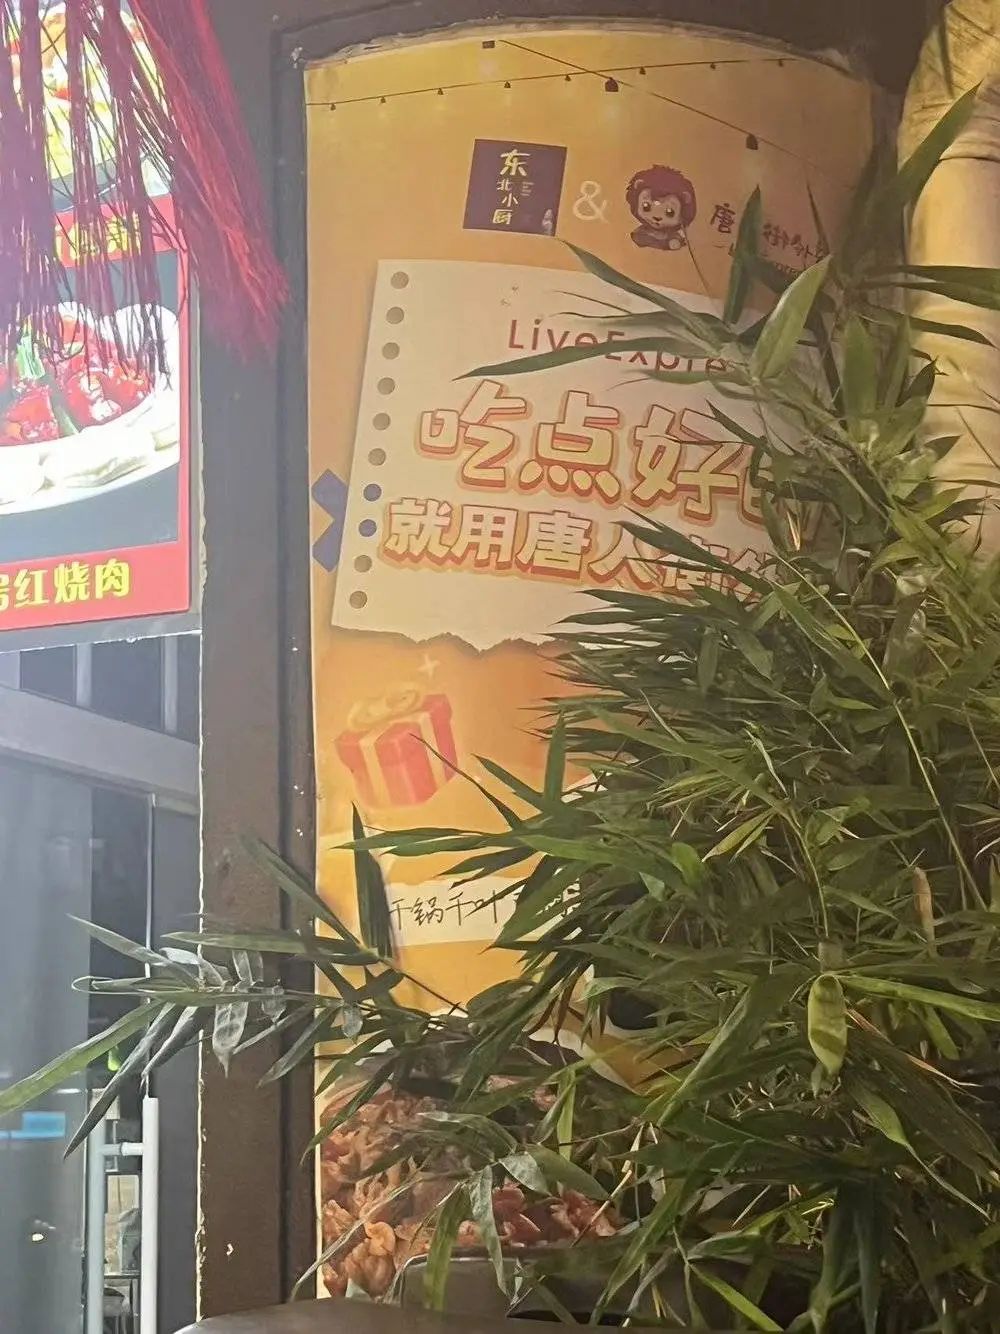 作者在新加坡路上偶遇的唐人街外卖推广